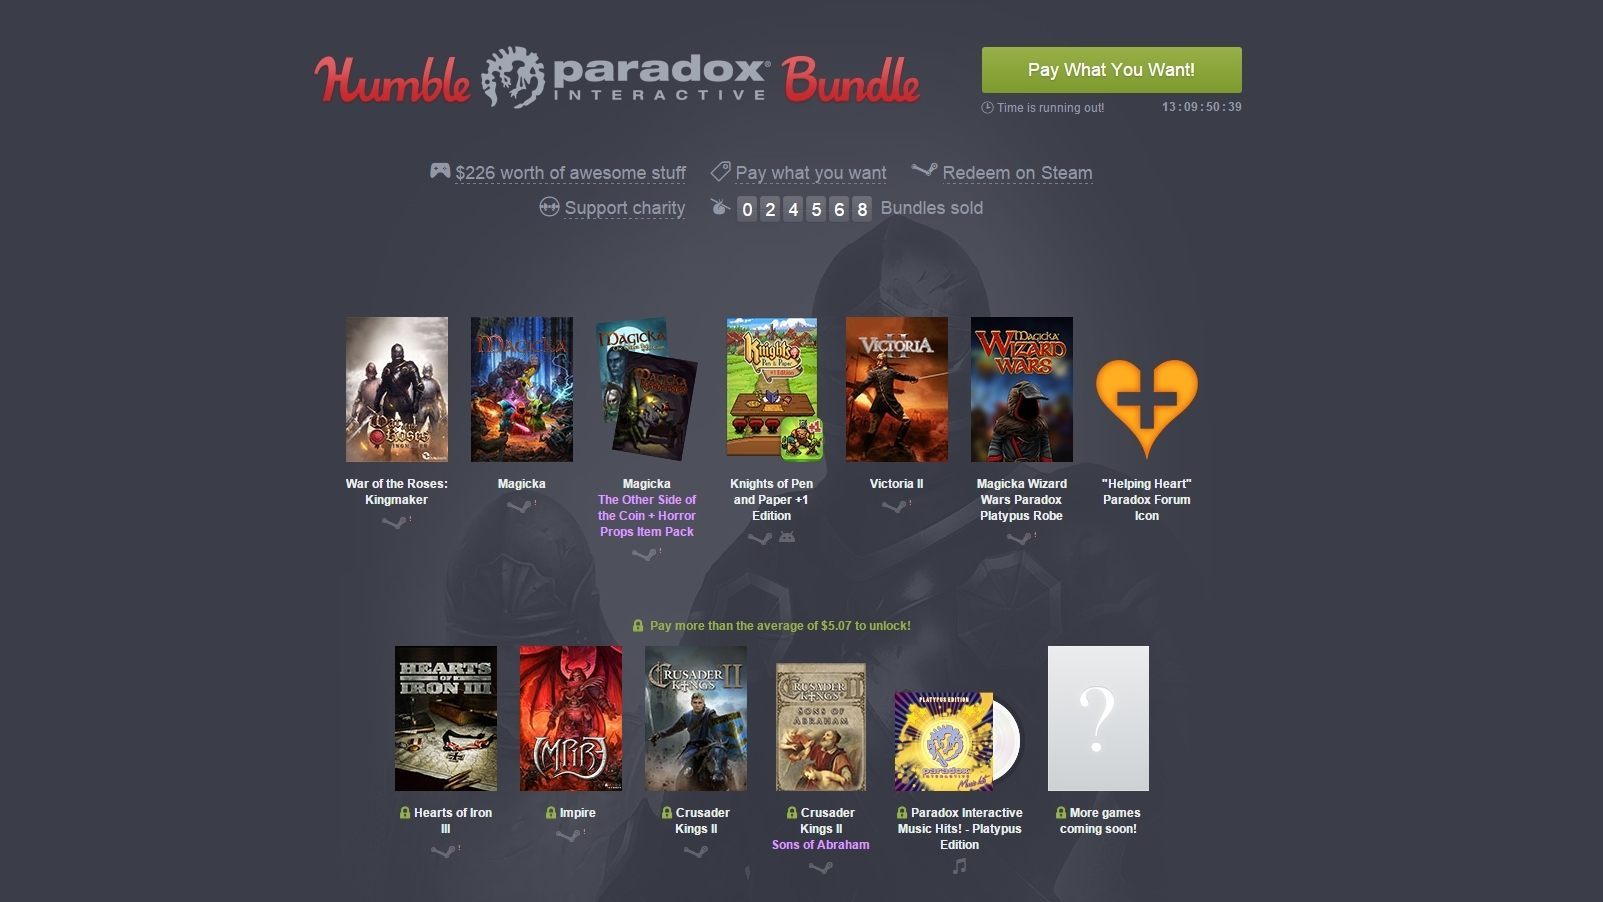 Tym razem do zgarnięcia w ramach Humble Bundle są świetne strategie od Paradox Interactive. - Wieści ze świata (Grandia II, Humble Paradox Bundle, Nvidia GRID, Hearthstone) 13/5/15 - wiadomość - 2015-05-13